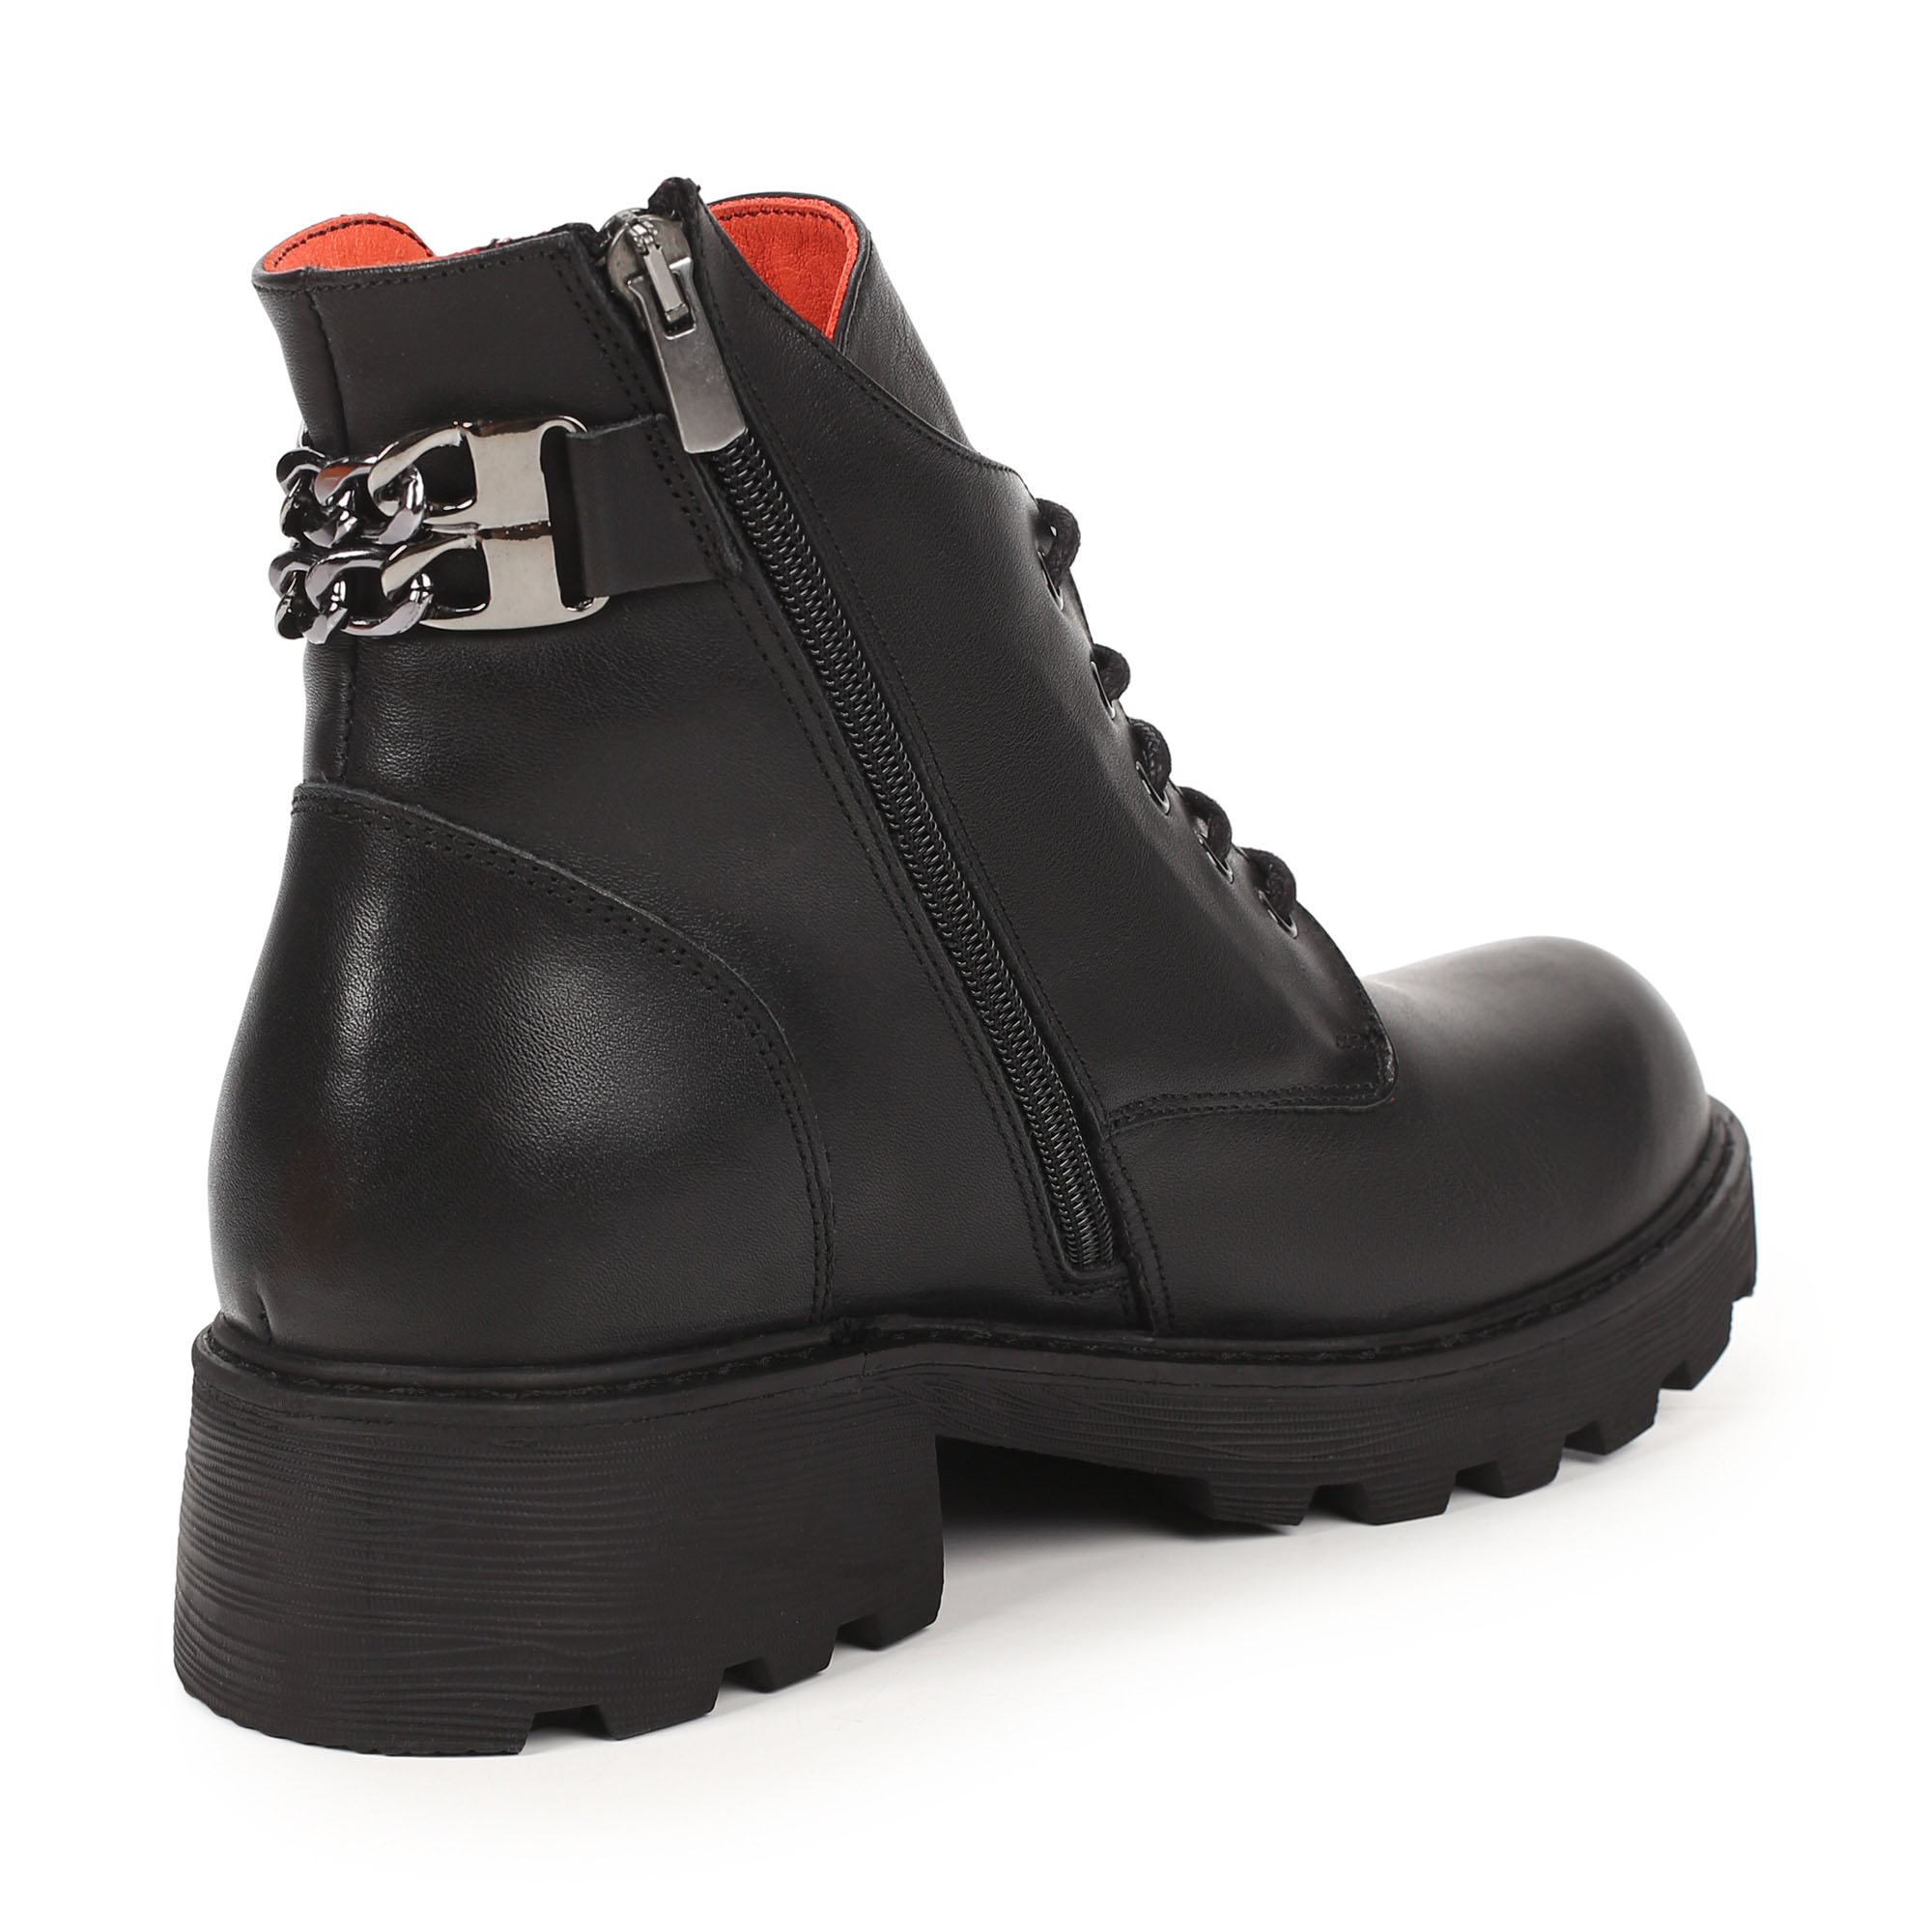 Ботинки Thomas Munz 539-007A-5102, цвет черный, размер 38 - фото 3